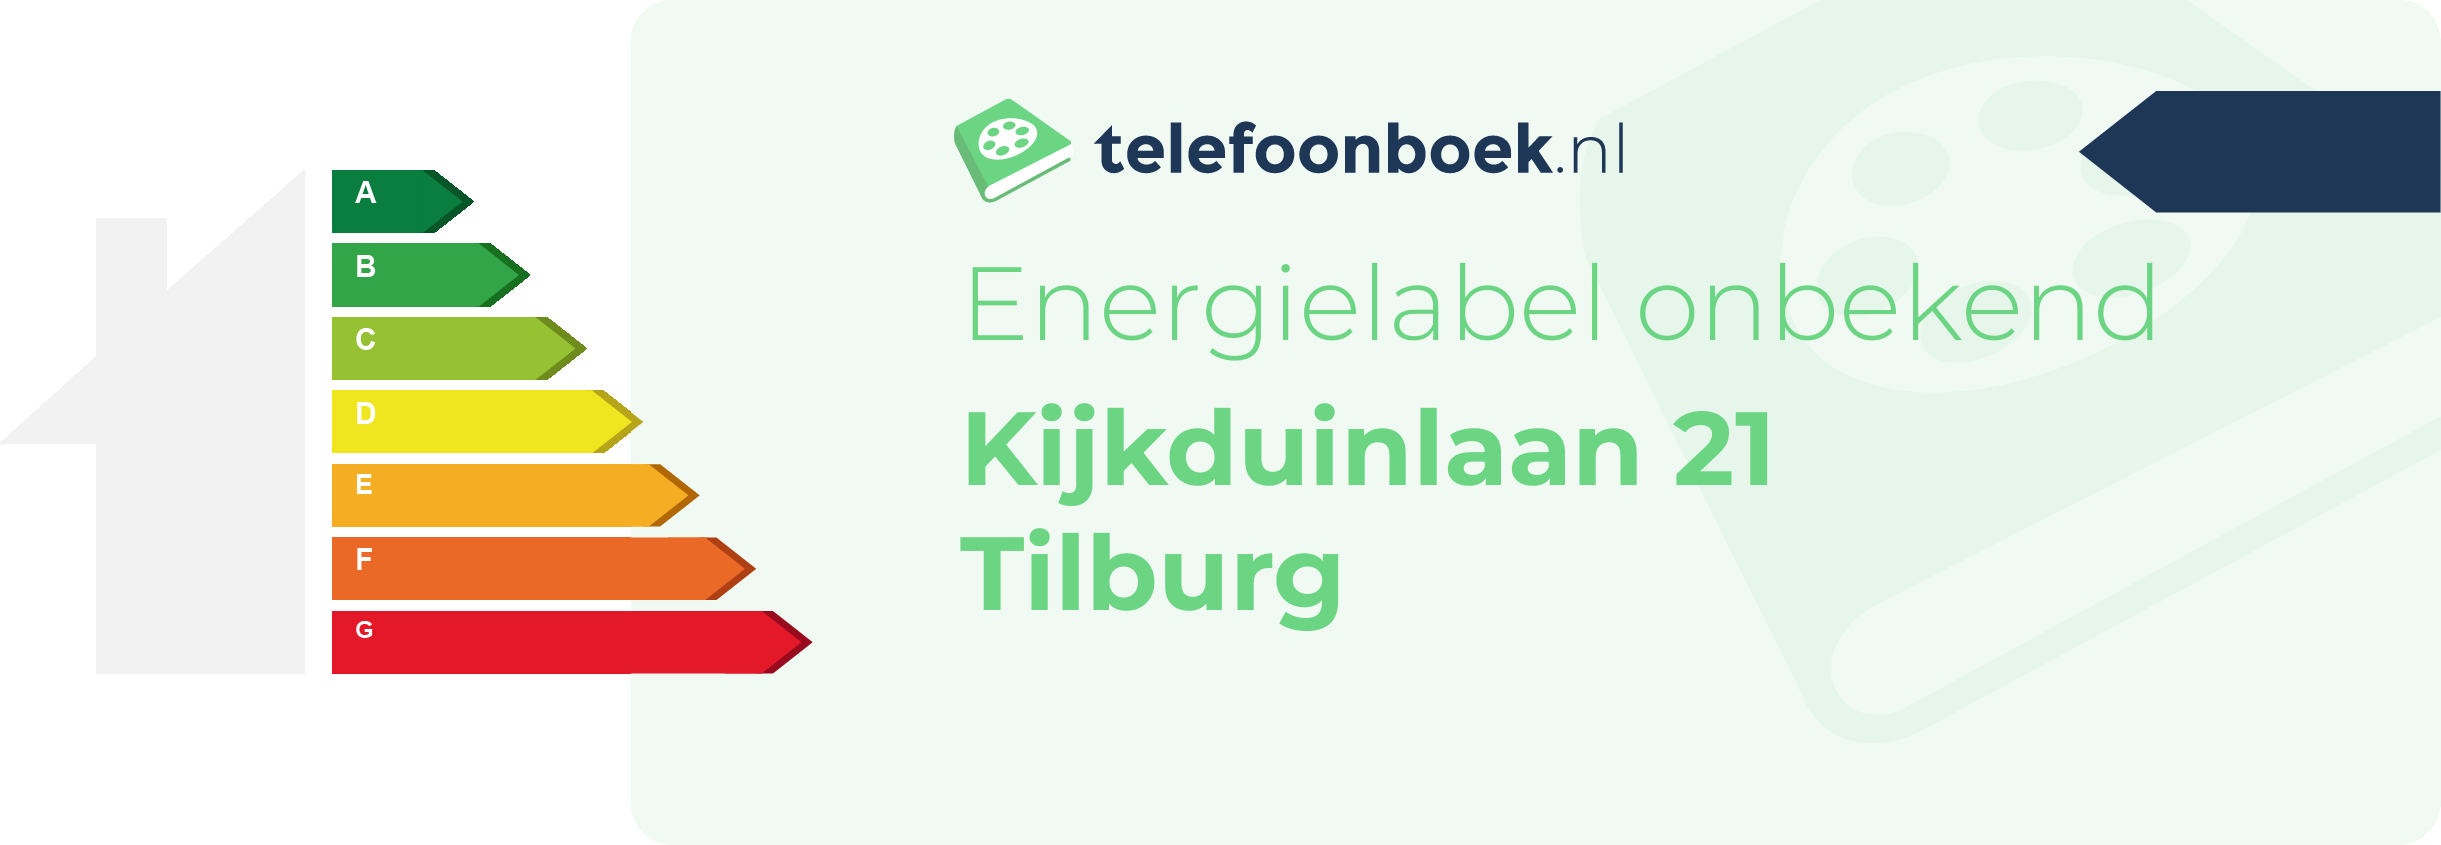 Energielabel Kijkduinlaan 21 Tilburg